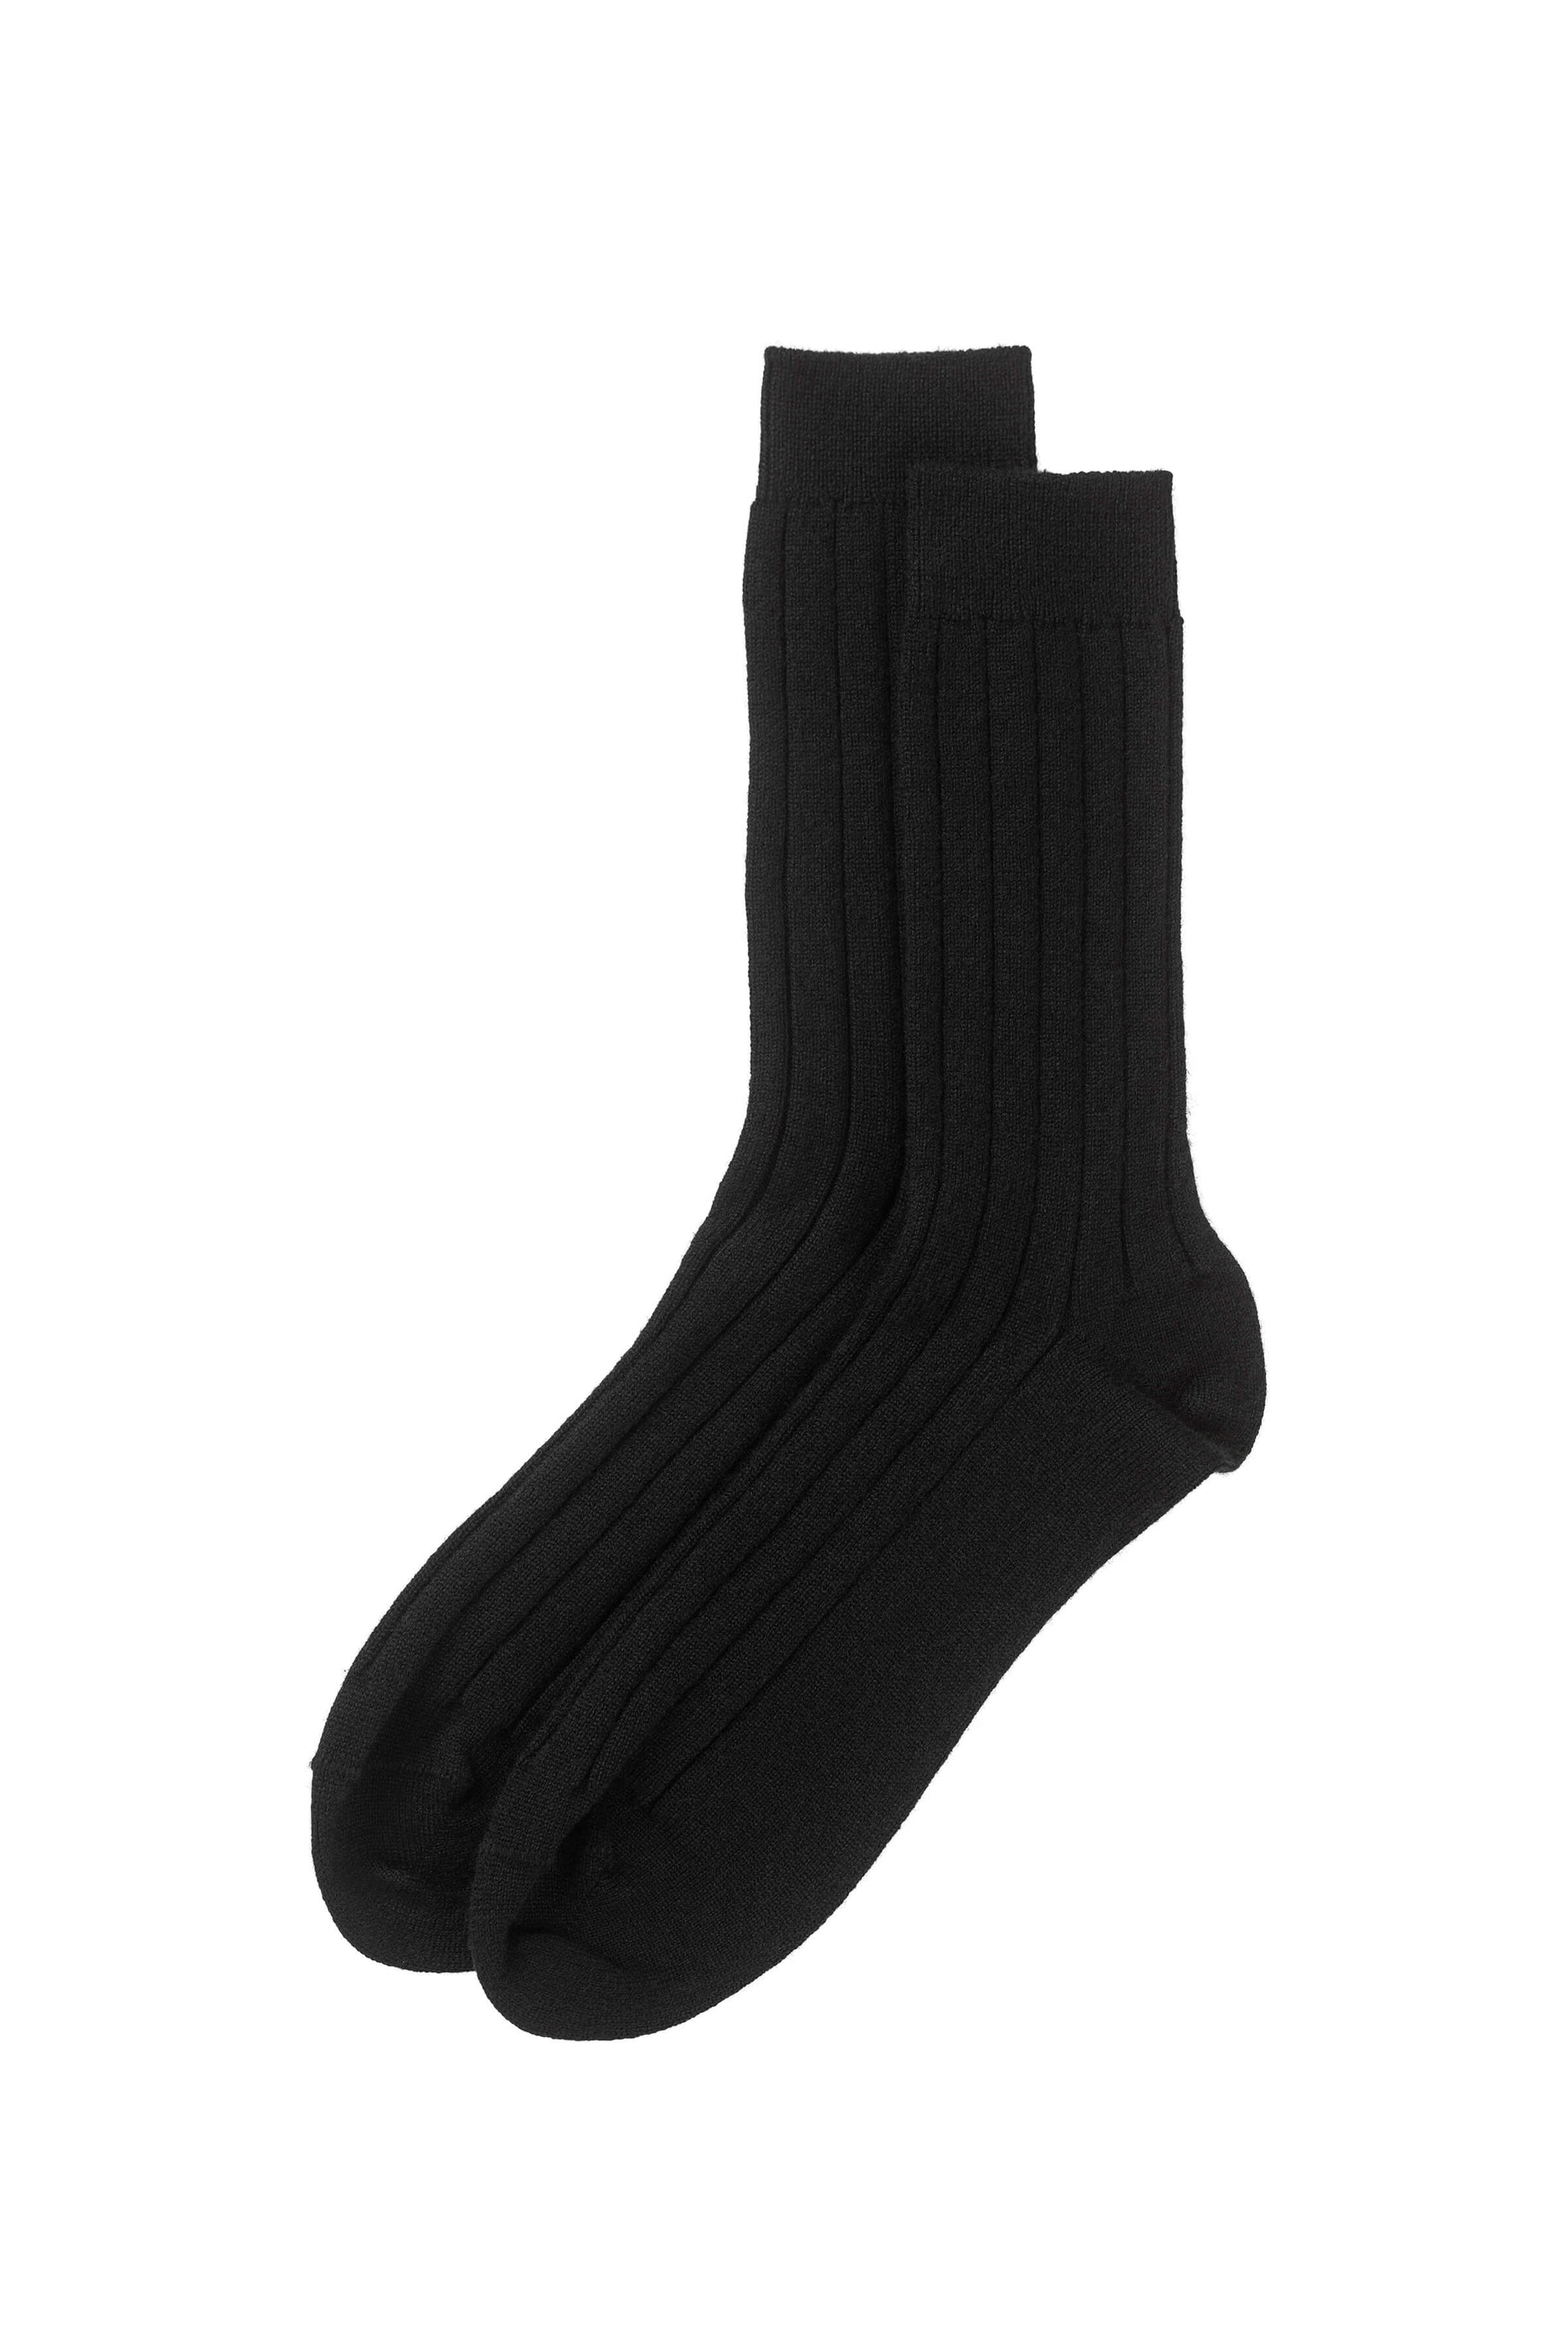 Johnstons of Elgin's Black Men's Cashmere Ribbed Socks 365GIFTSET2E